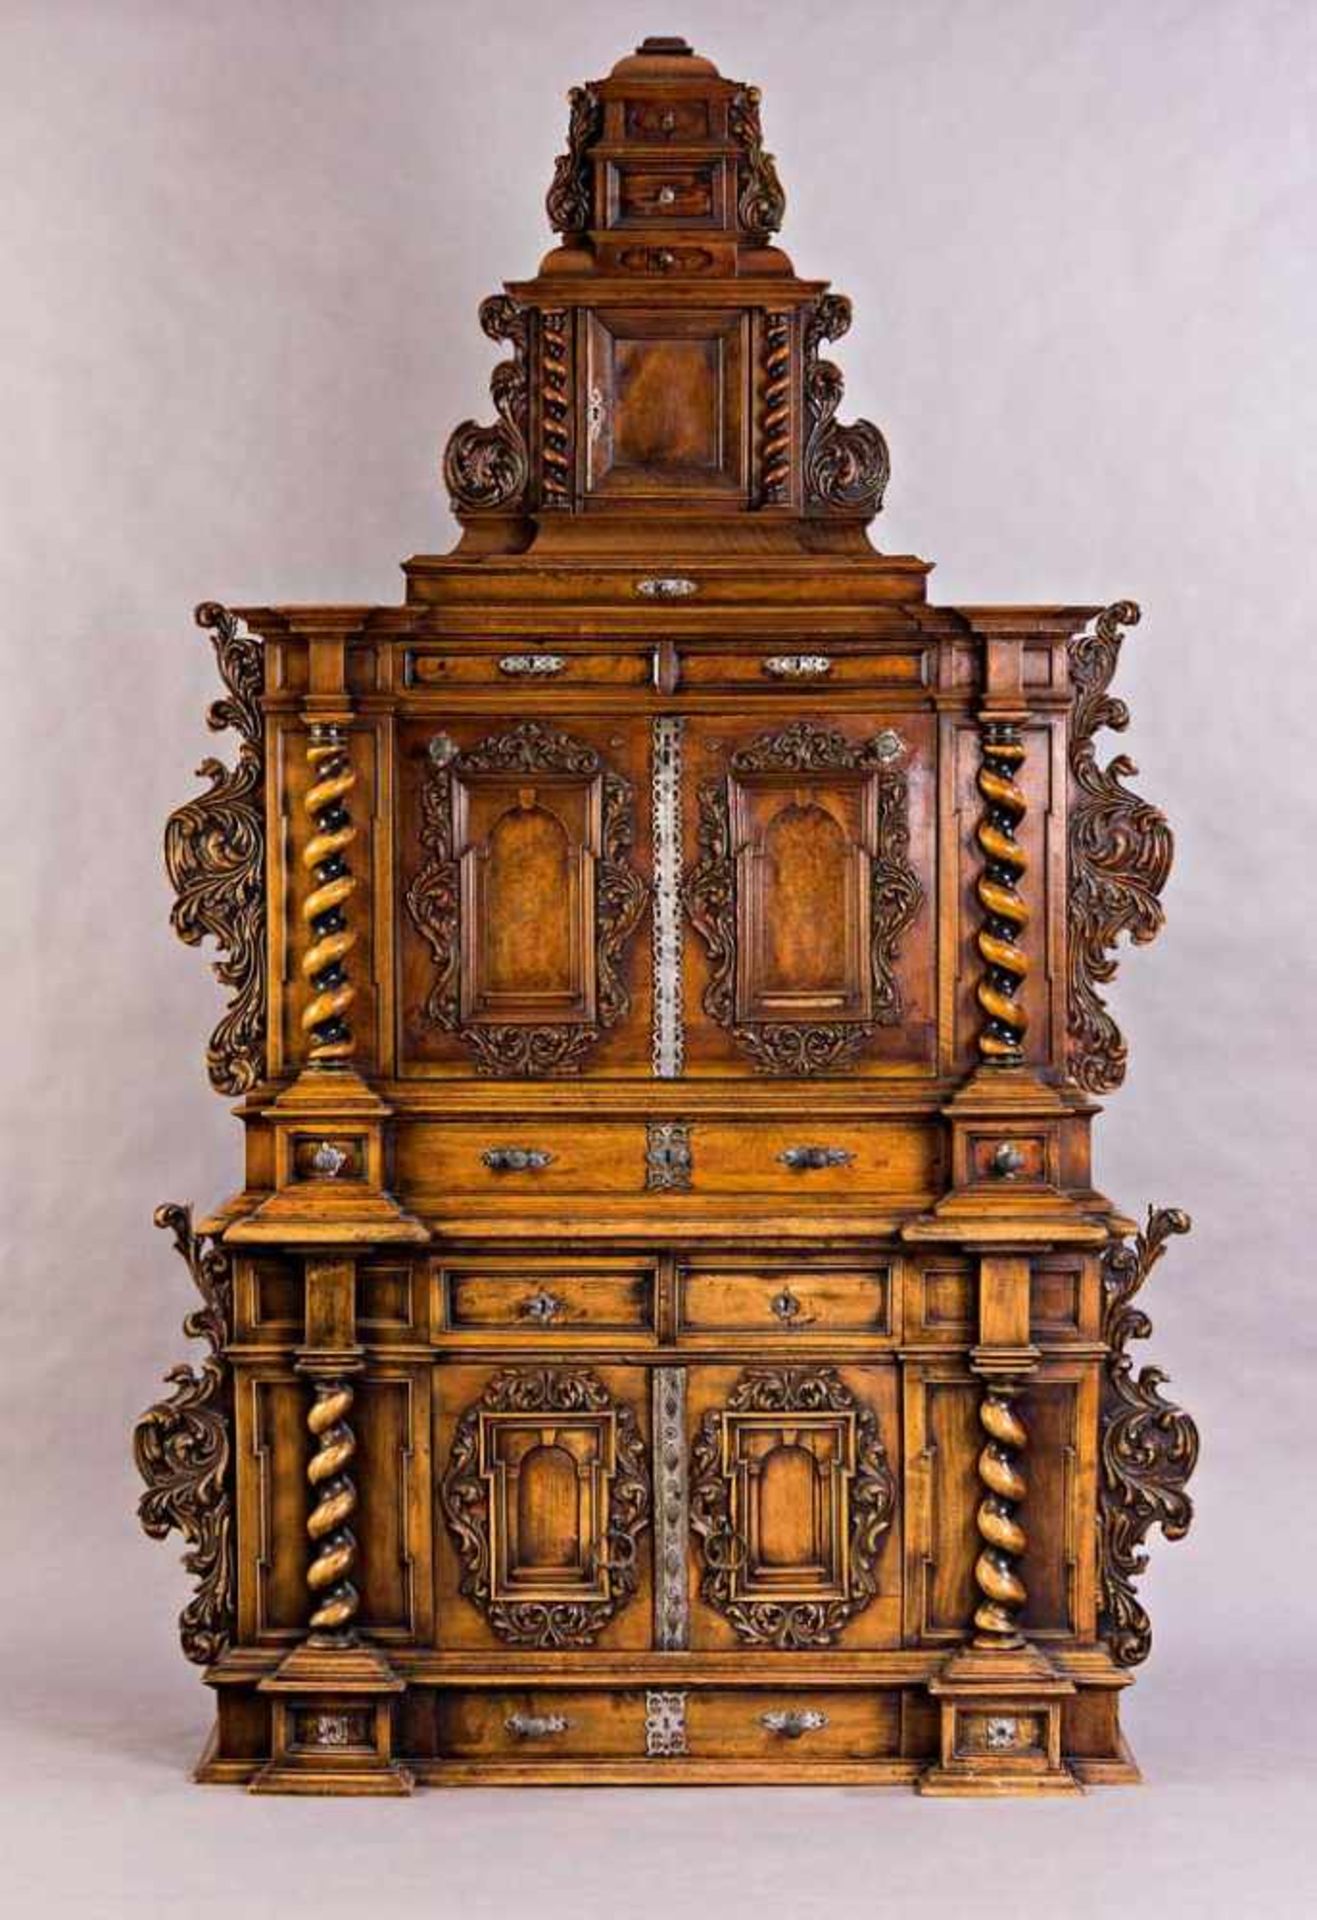 Kabinettschrank im Renaissance-Stil. Architektonisch gegliederter Korpus. Risalitartig vorspringende